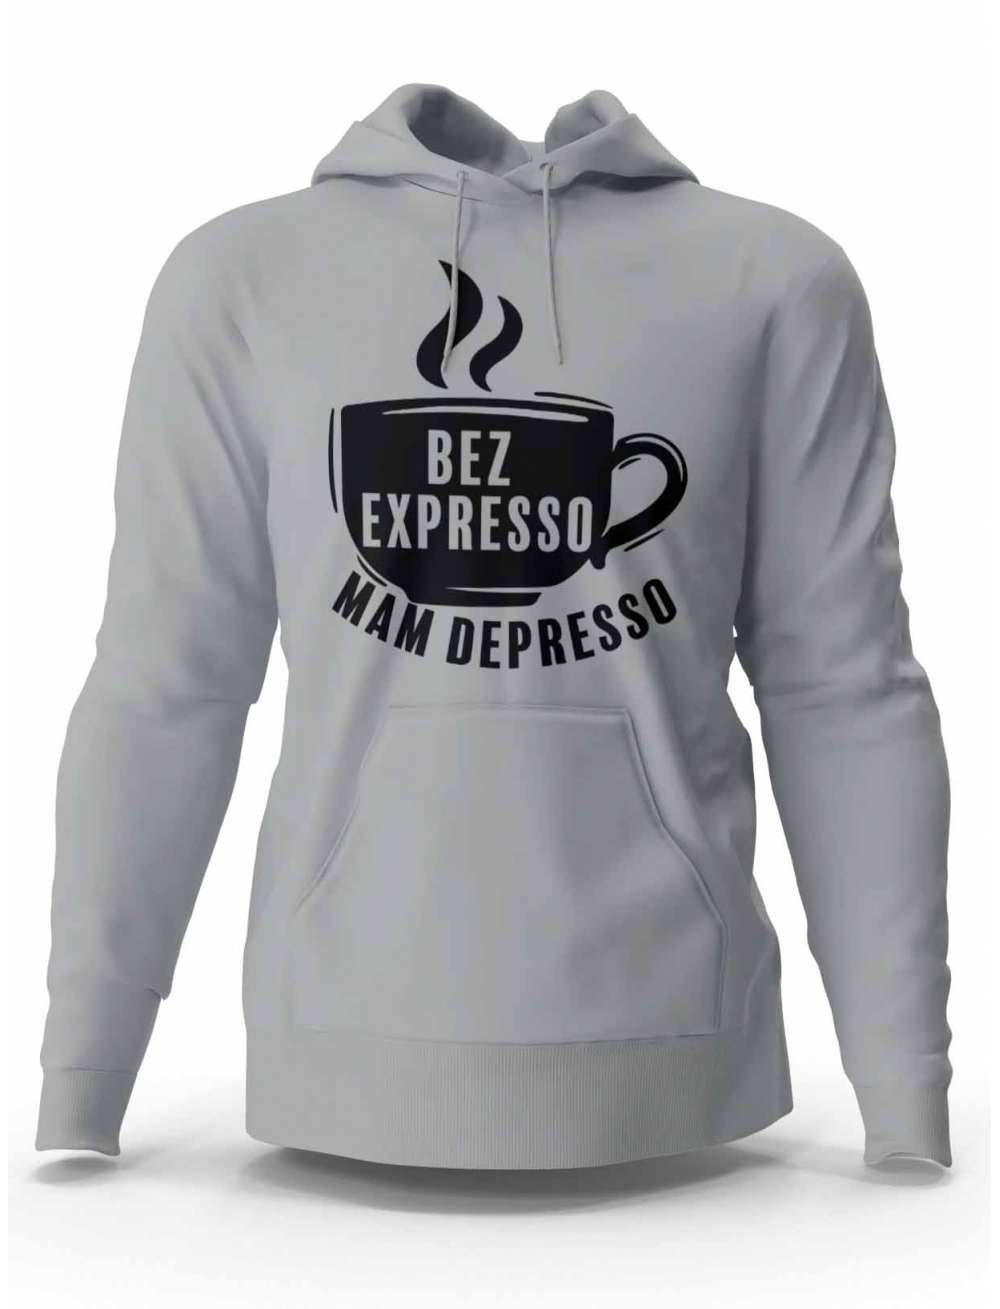 Bluza Męska, Bez Expresso Mam Depresso, Prezent Dla Mężczyzny